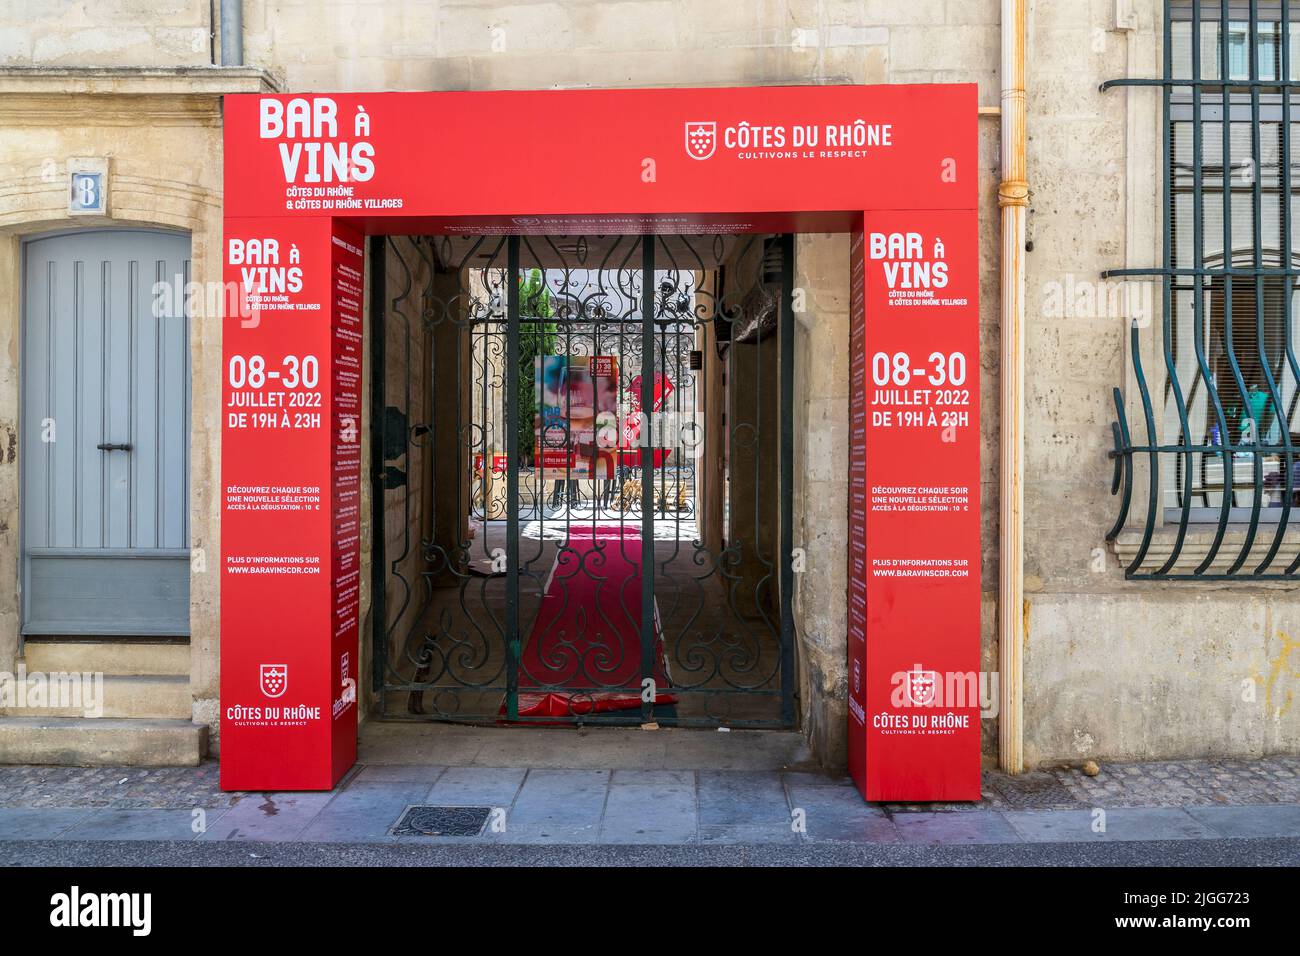 Un marco rojo sorprendente en una antigua casa de la ciudad indica esto: Durante tres semanas, Aviñón acoge diariamente catas de vino Côtes du Rhône. Aviñón, Francia Foto de stock